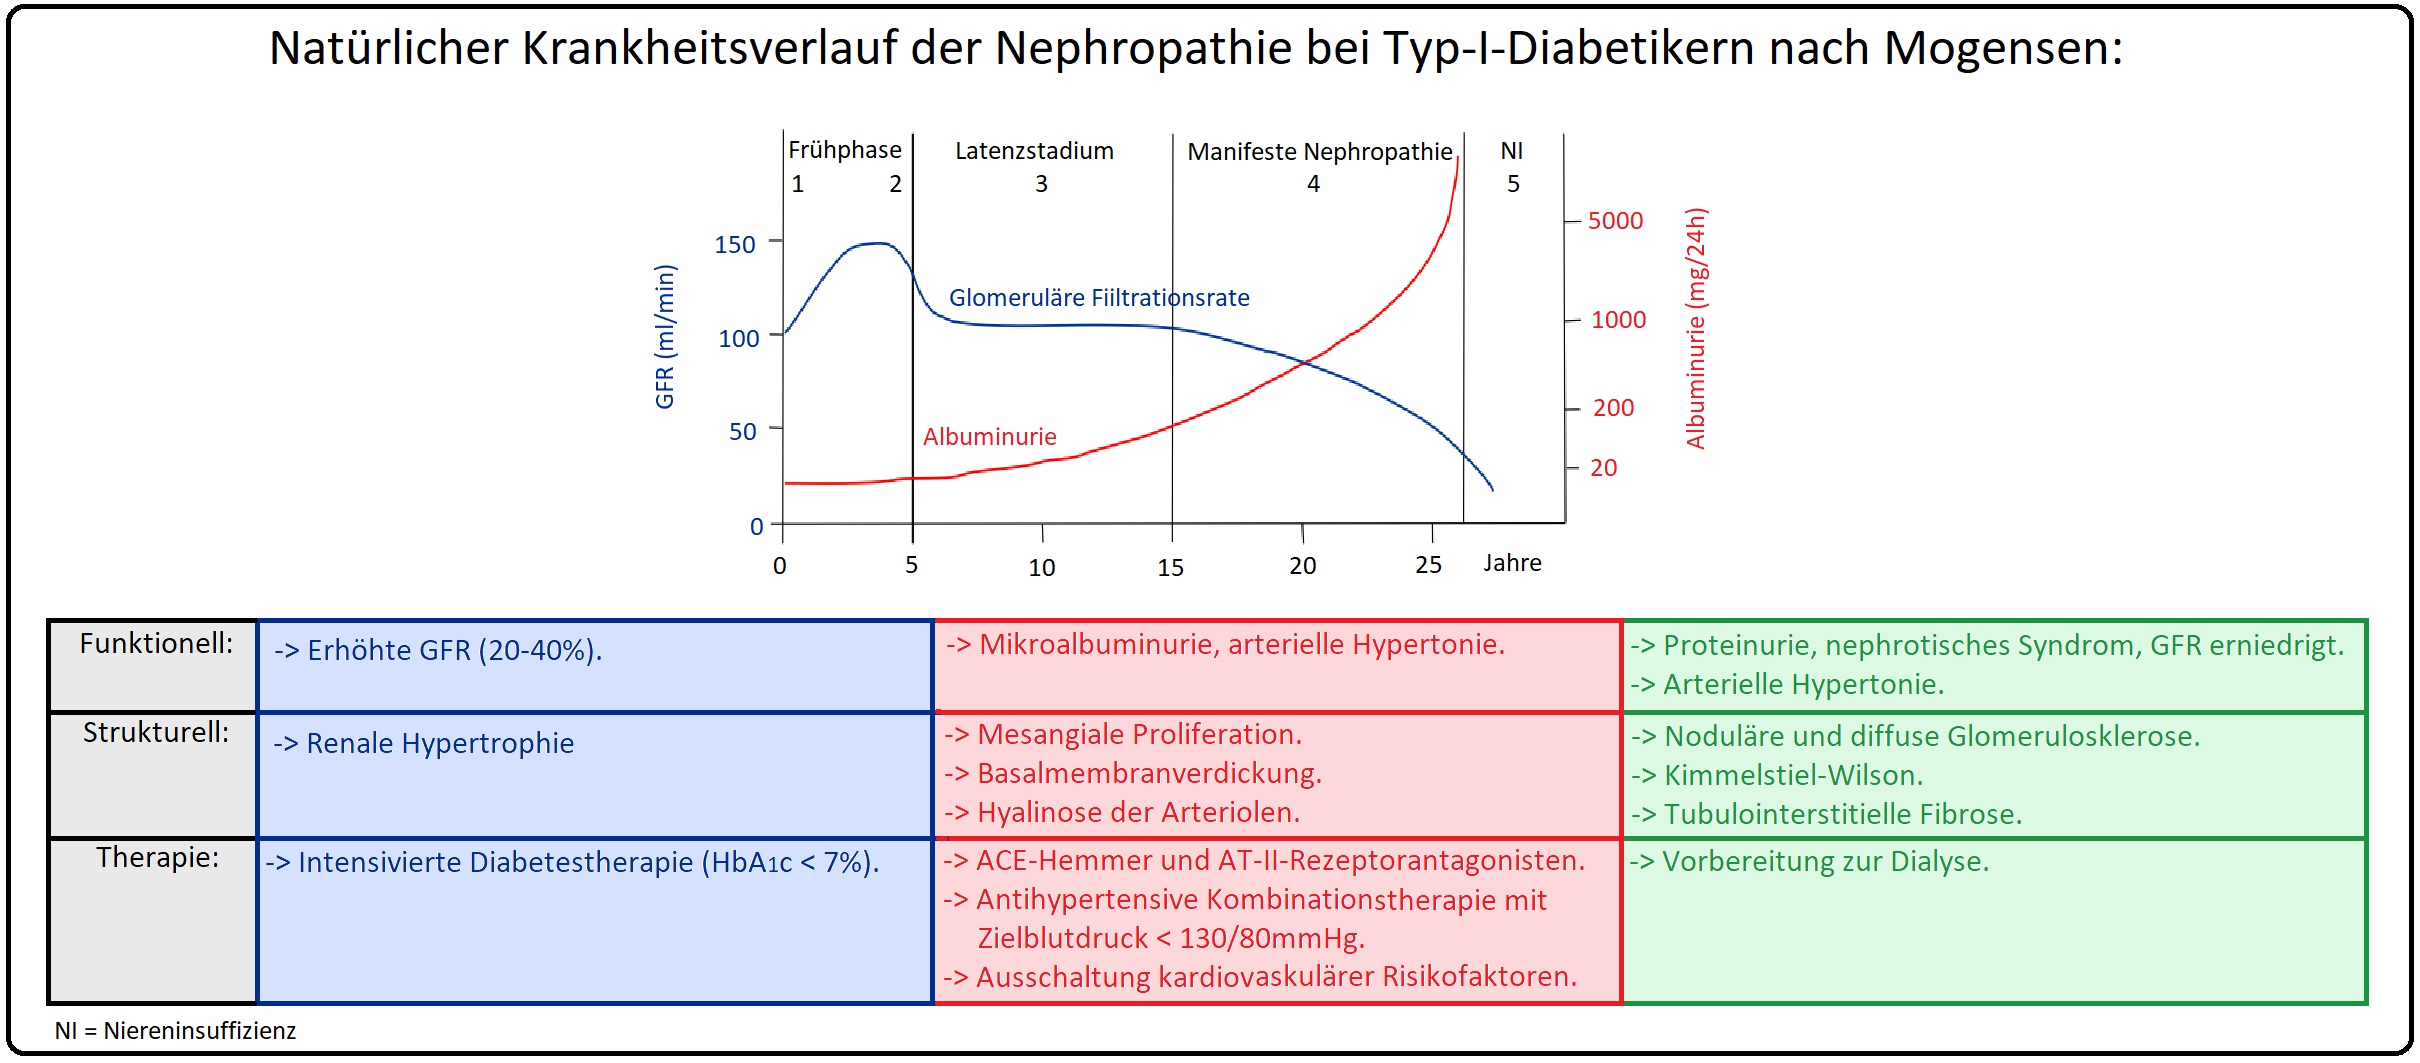 1136 Natürlicher Krankheitsverlauf der Nephropathie bei Typ I Diabetikern nach Mogensen